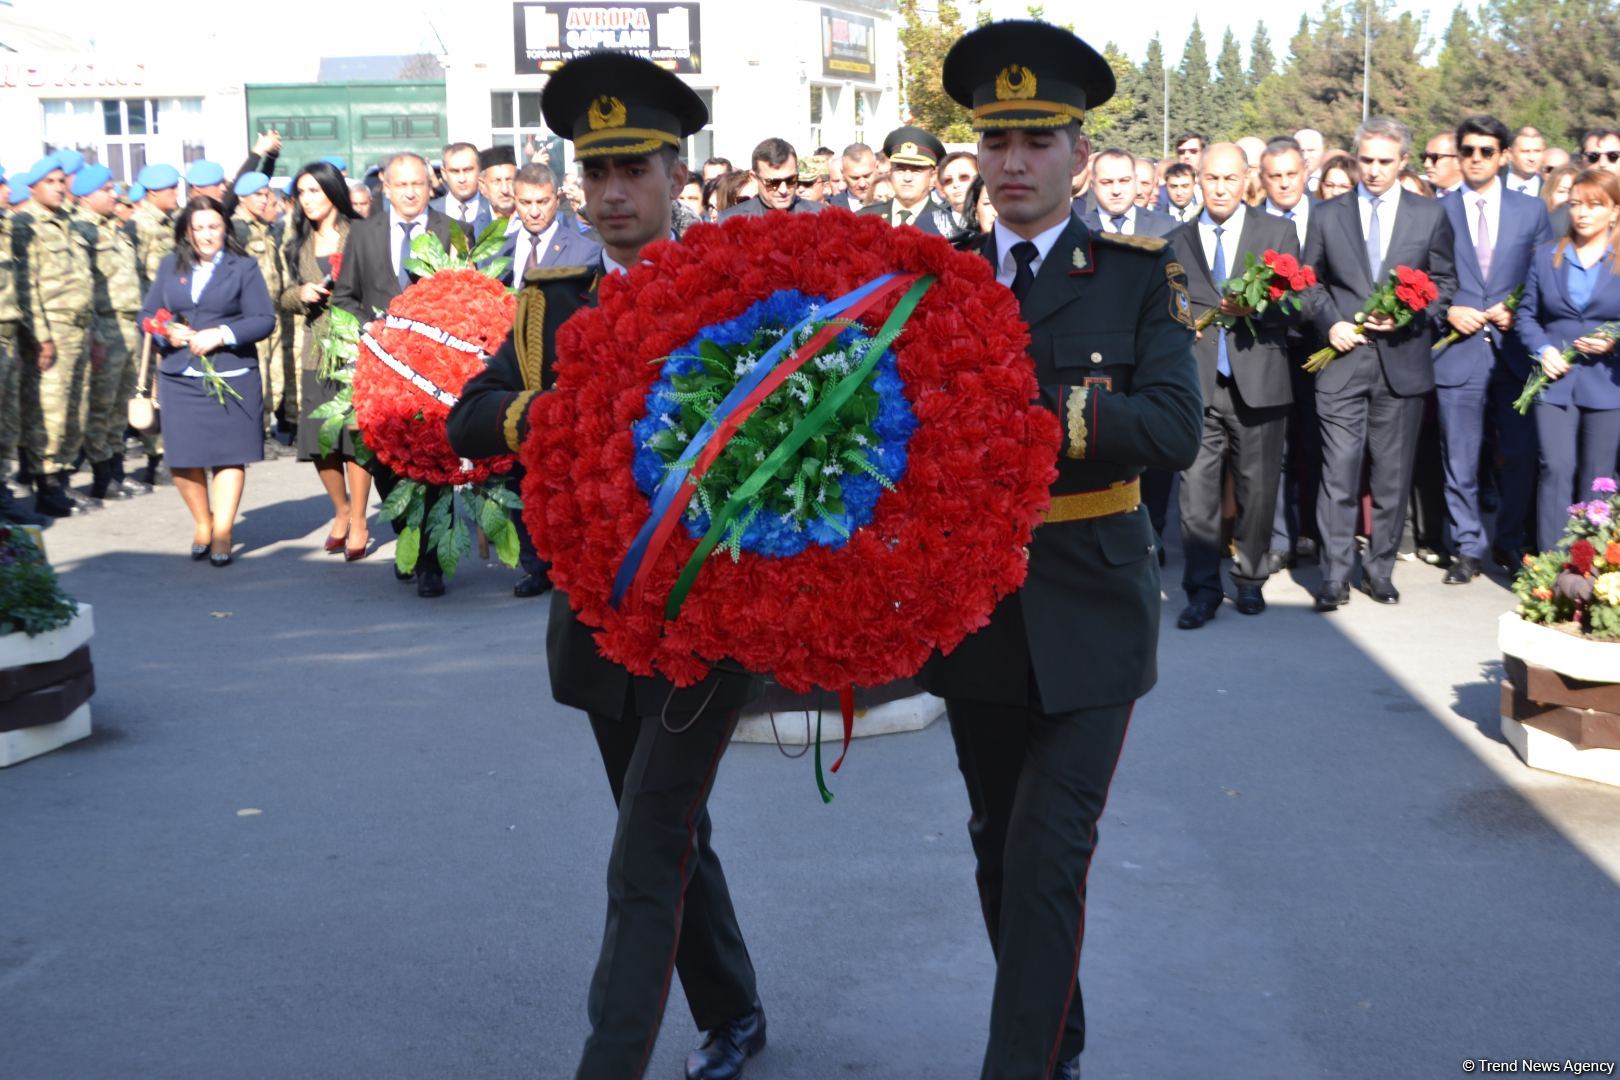 В Барде почтили память жертв армянского террора (ФОТО)